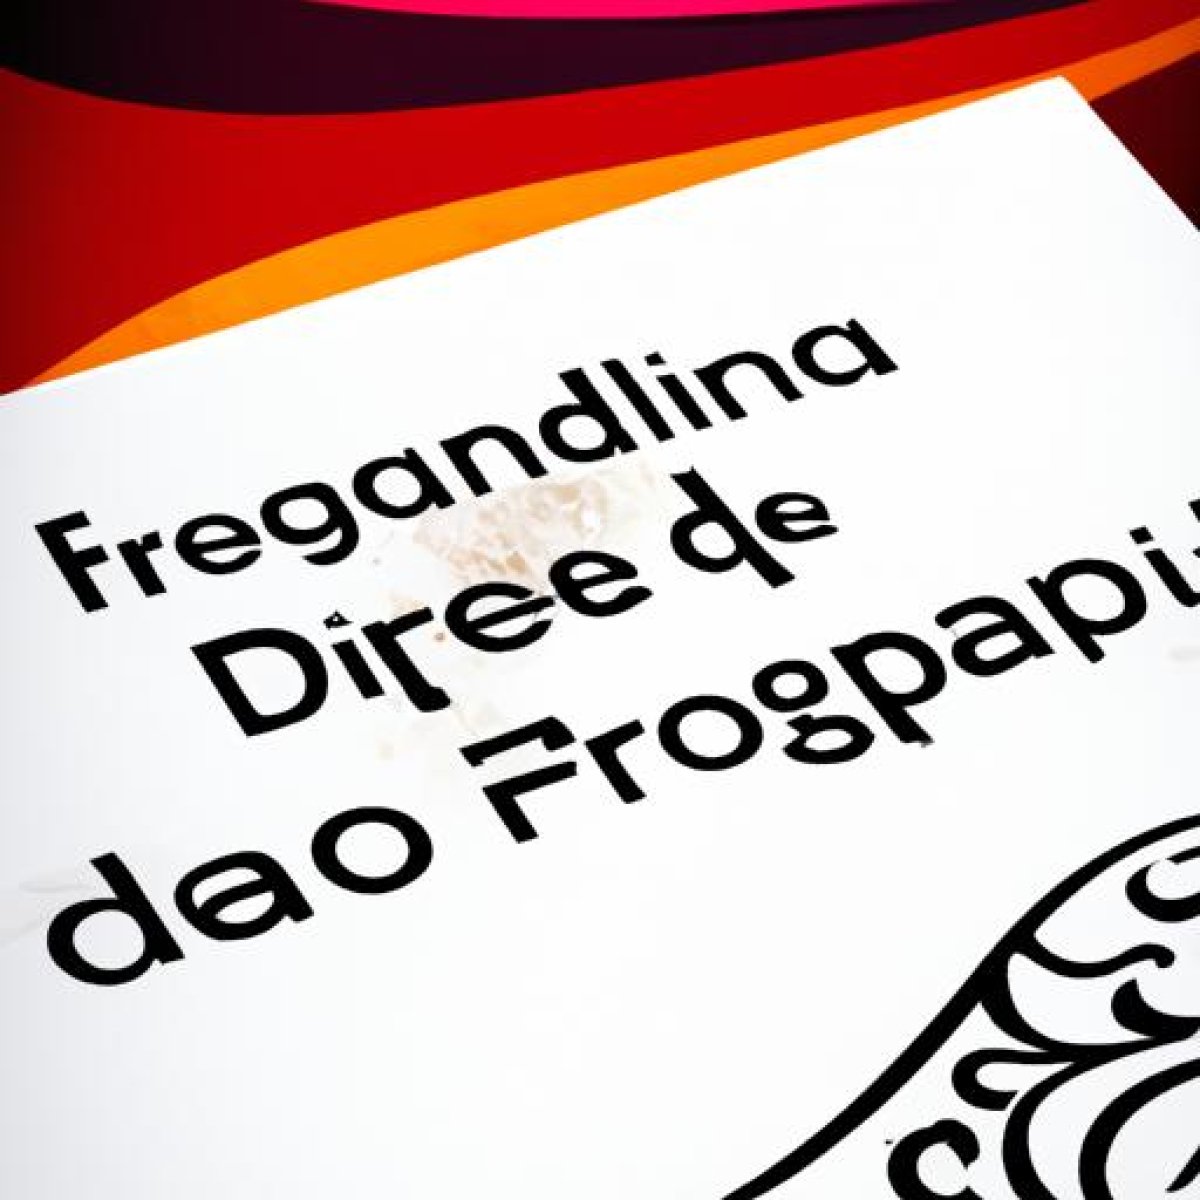 Programas diseño gráfico gratis español